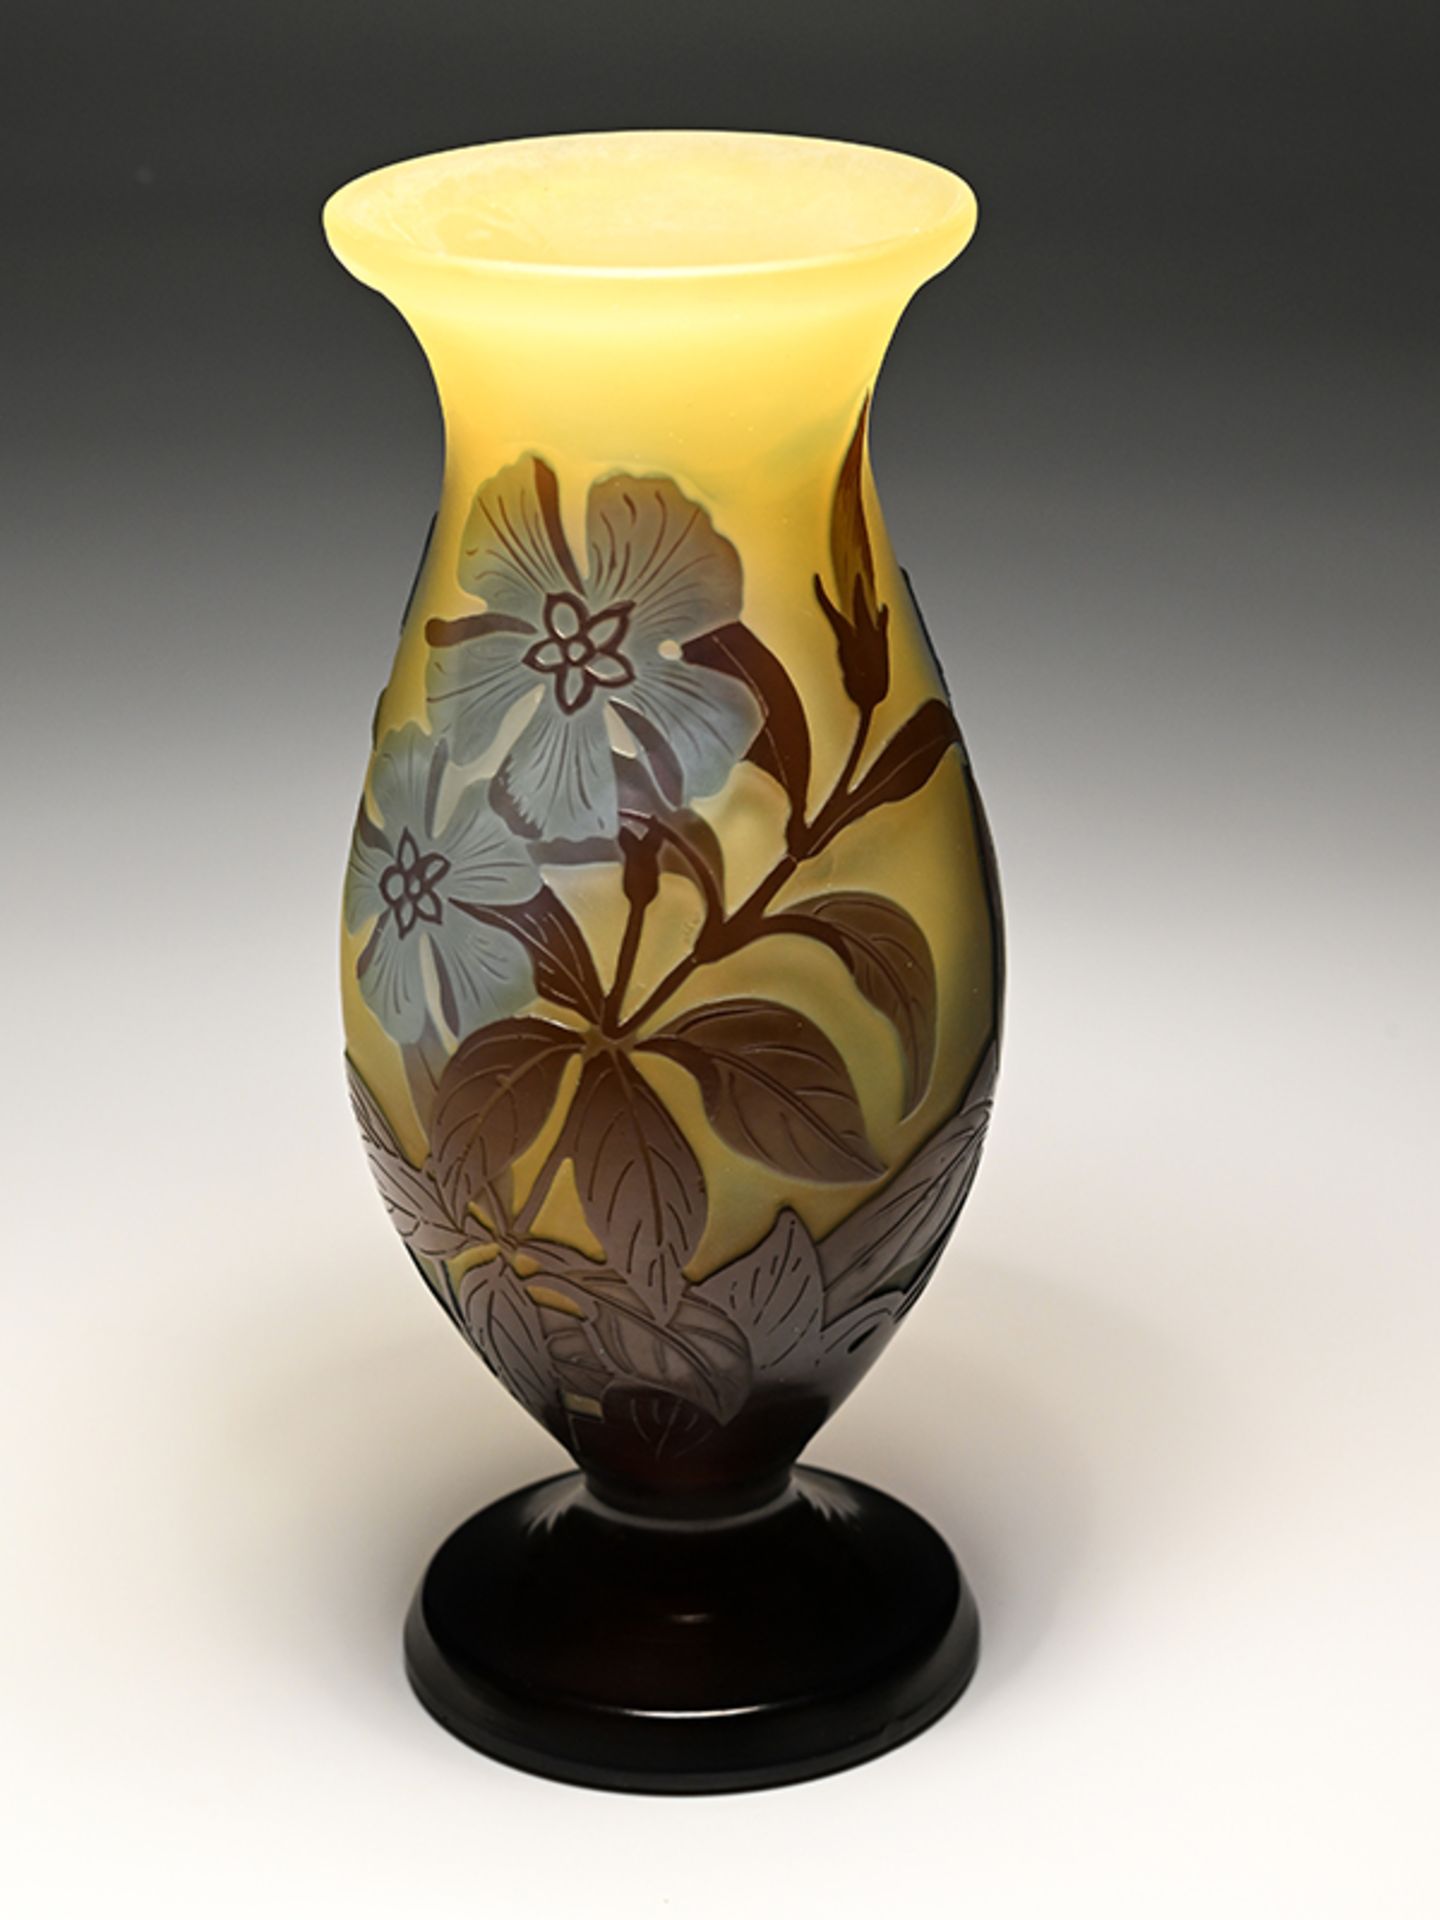 Kleine Art-nouveau-Vase "Pervenches", Emile Gallé-Werkstatt, Nancy, 1906 - 1914. - Image 5 of 8